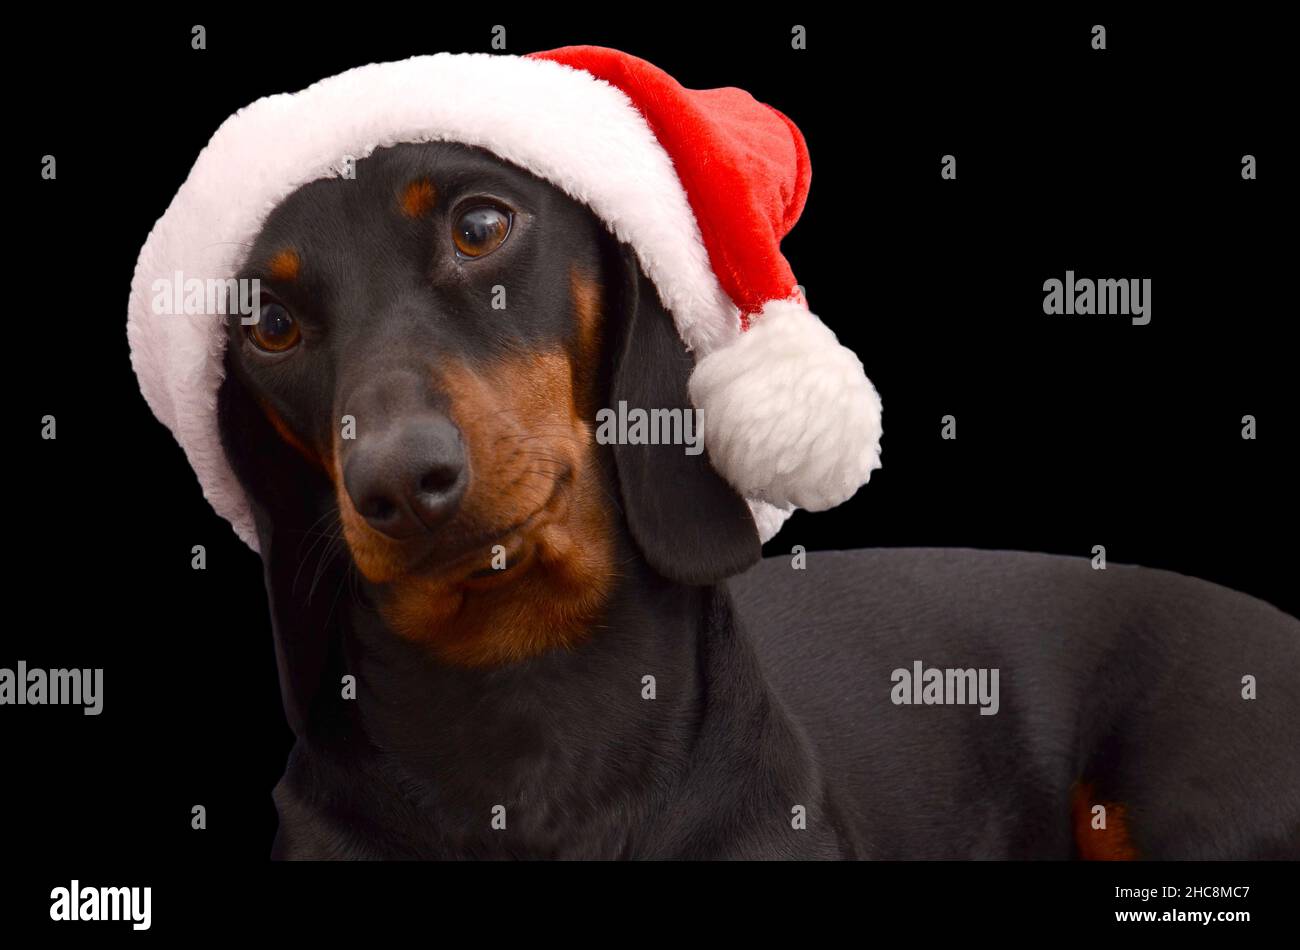 dachshund dog wearing santa hat isolated on the black background Stock Photo